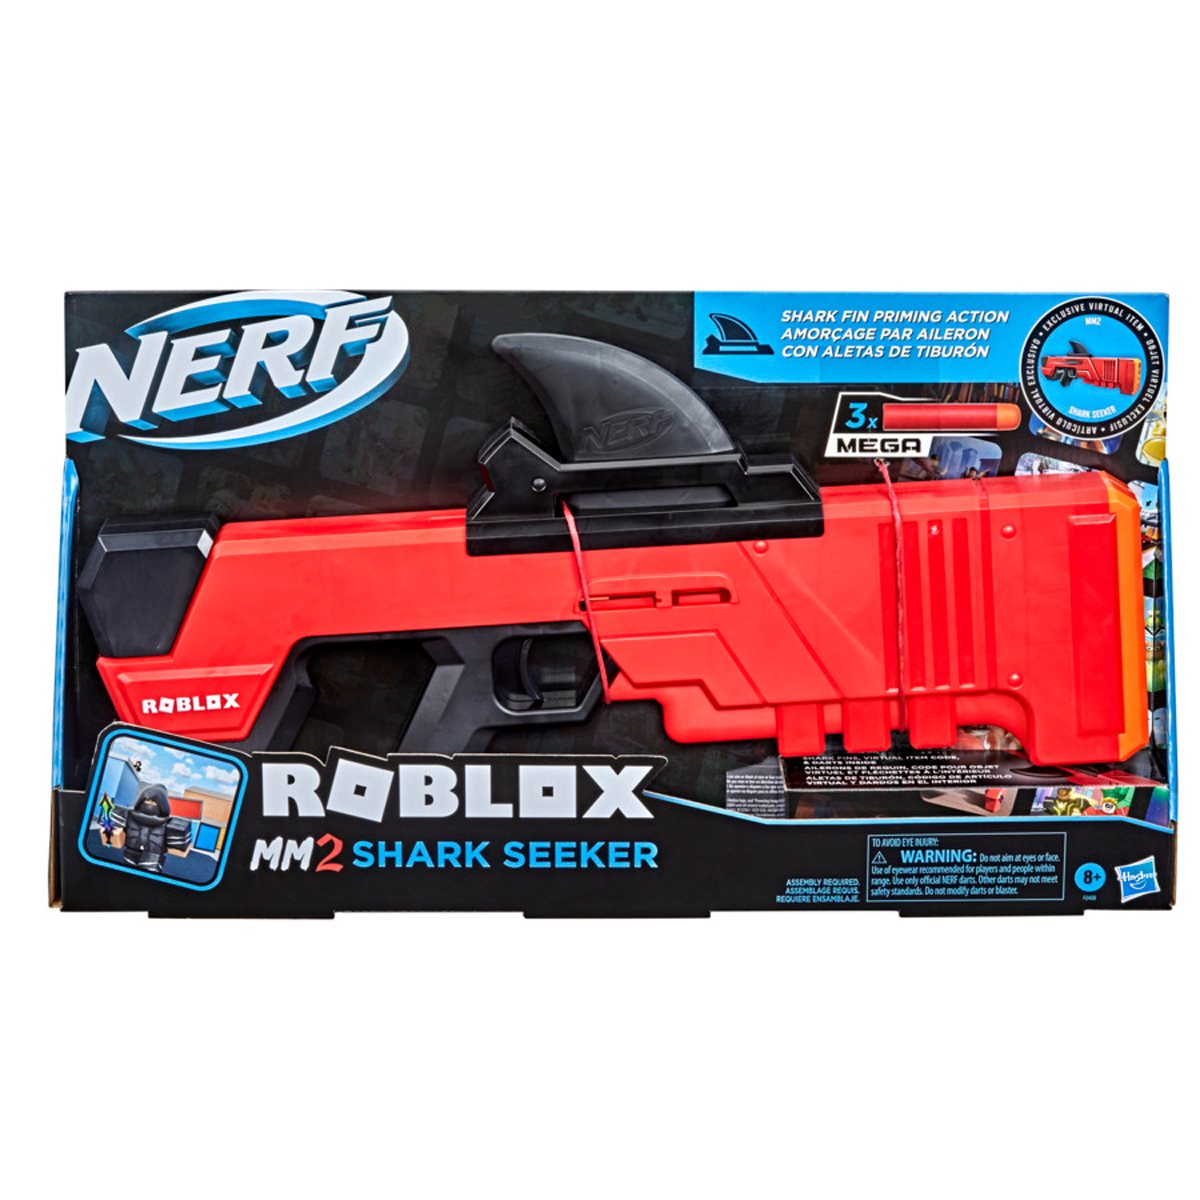 Nerf Roblox MM2 Shark Seeker Review and Firing Demo [4K] 